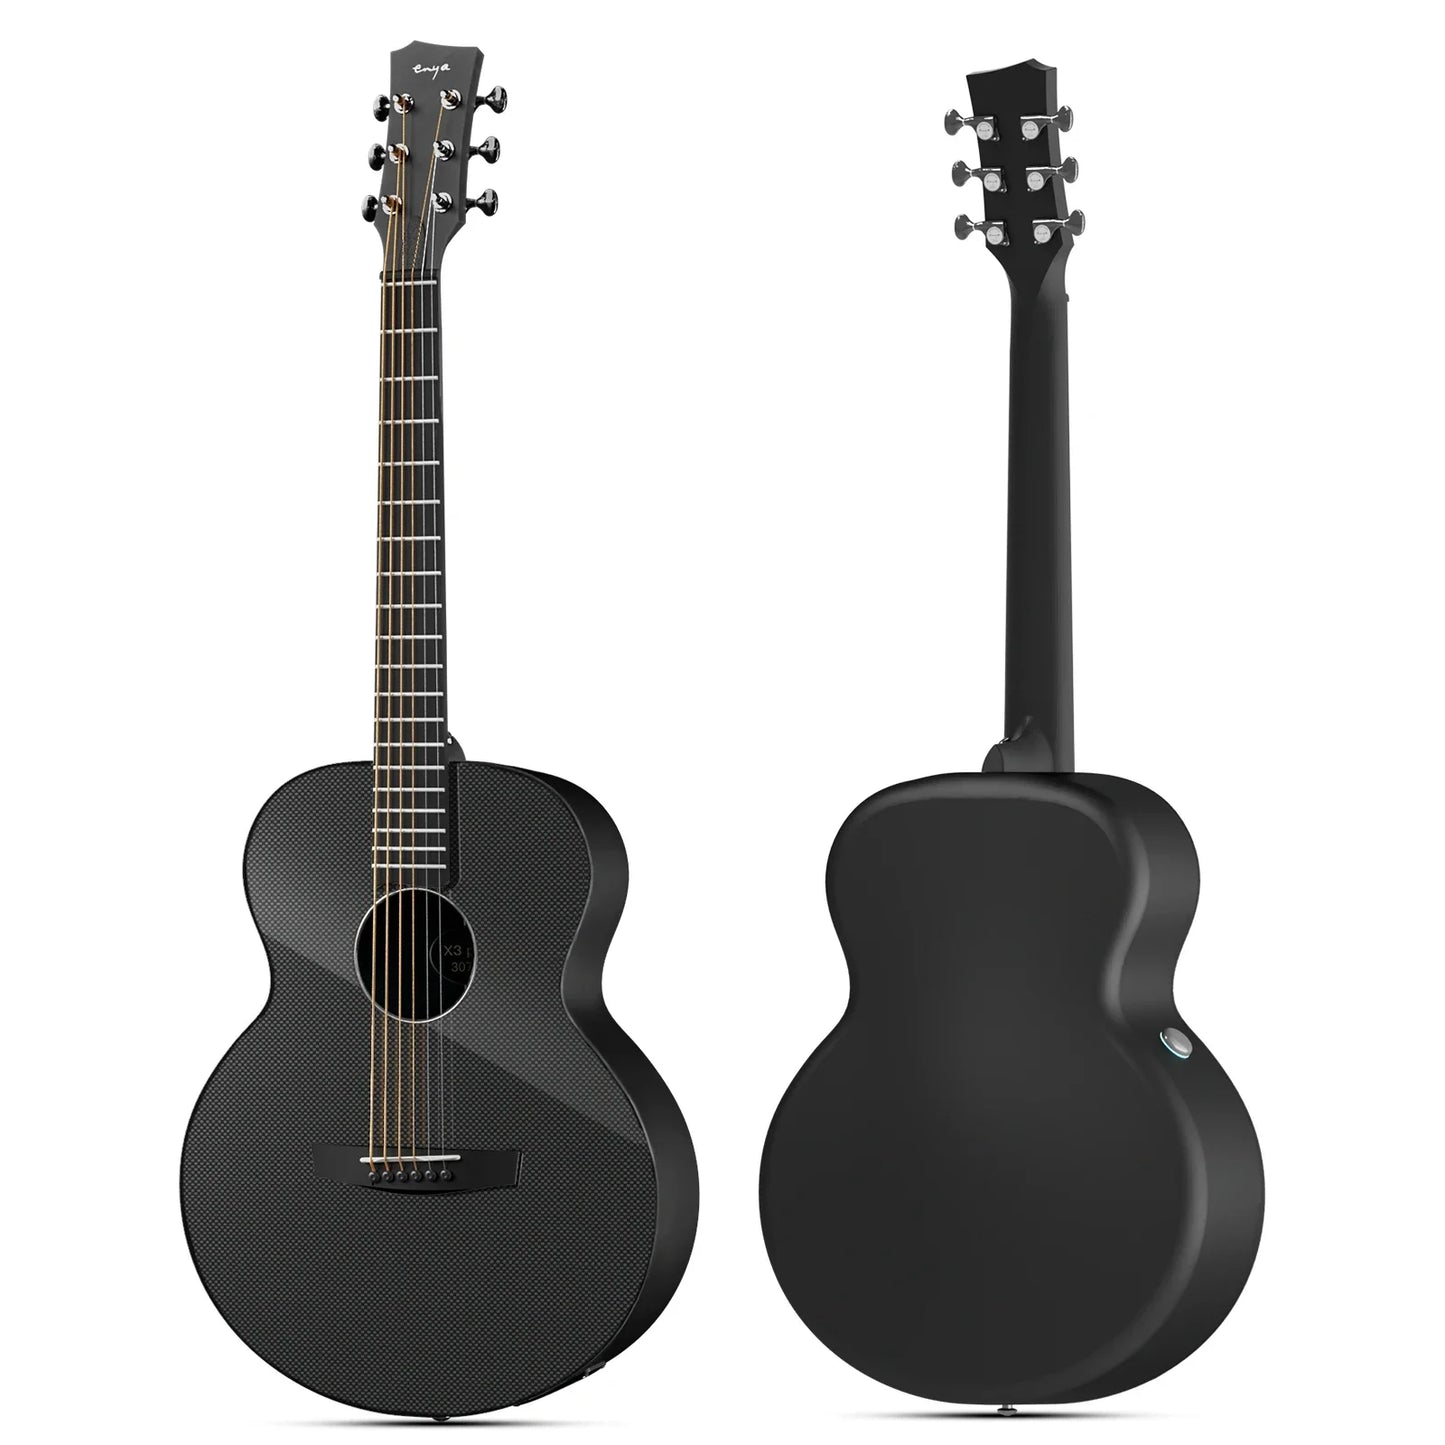 Enya X3 Pro Acoustic Electric Guitar Carbon Fiber Travel Guitar Acoustic Plus Guitar Bundle with Gig Bag, Instrument Cable - Premium guitar from Lizard Vigilante - Just $699.99! Shop now at Lizard Vigilante